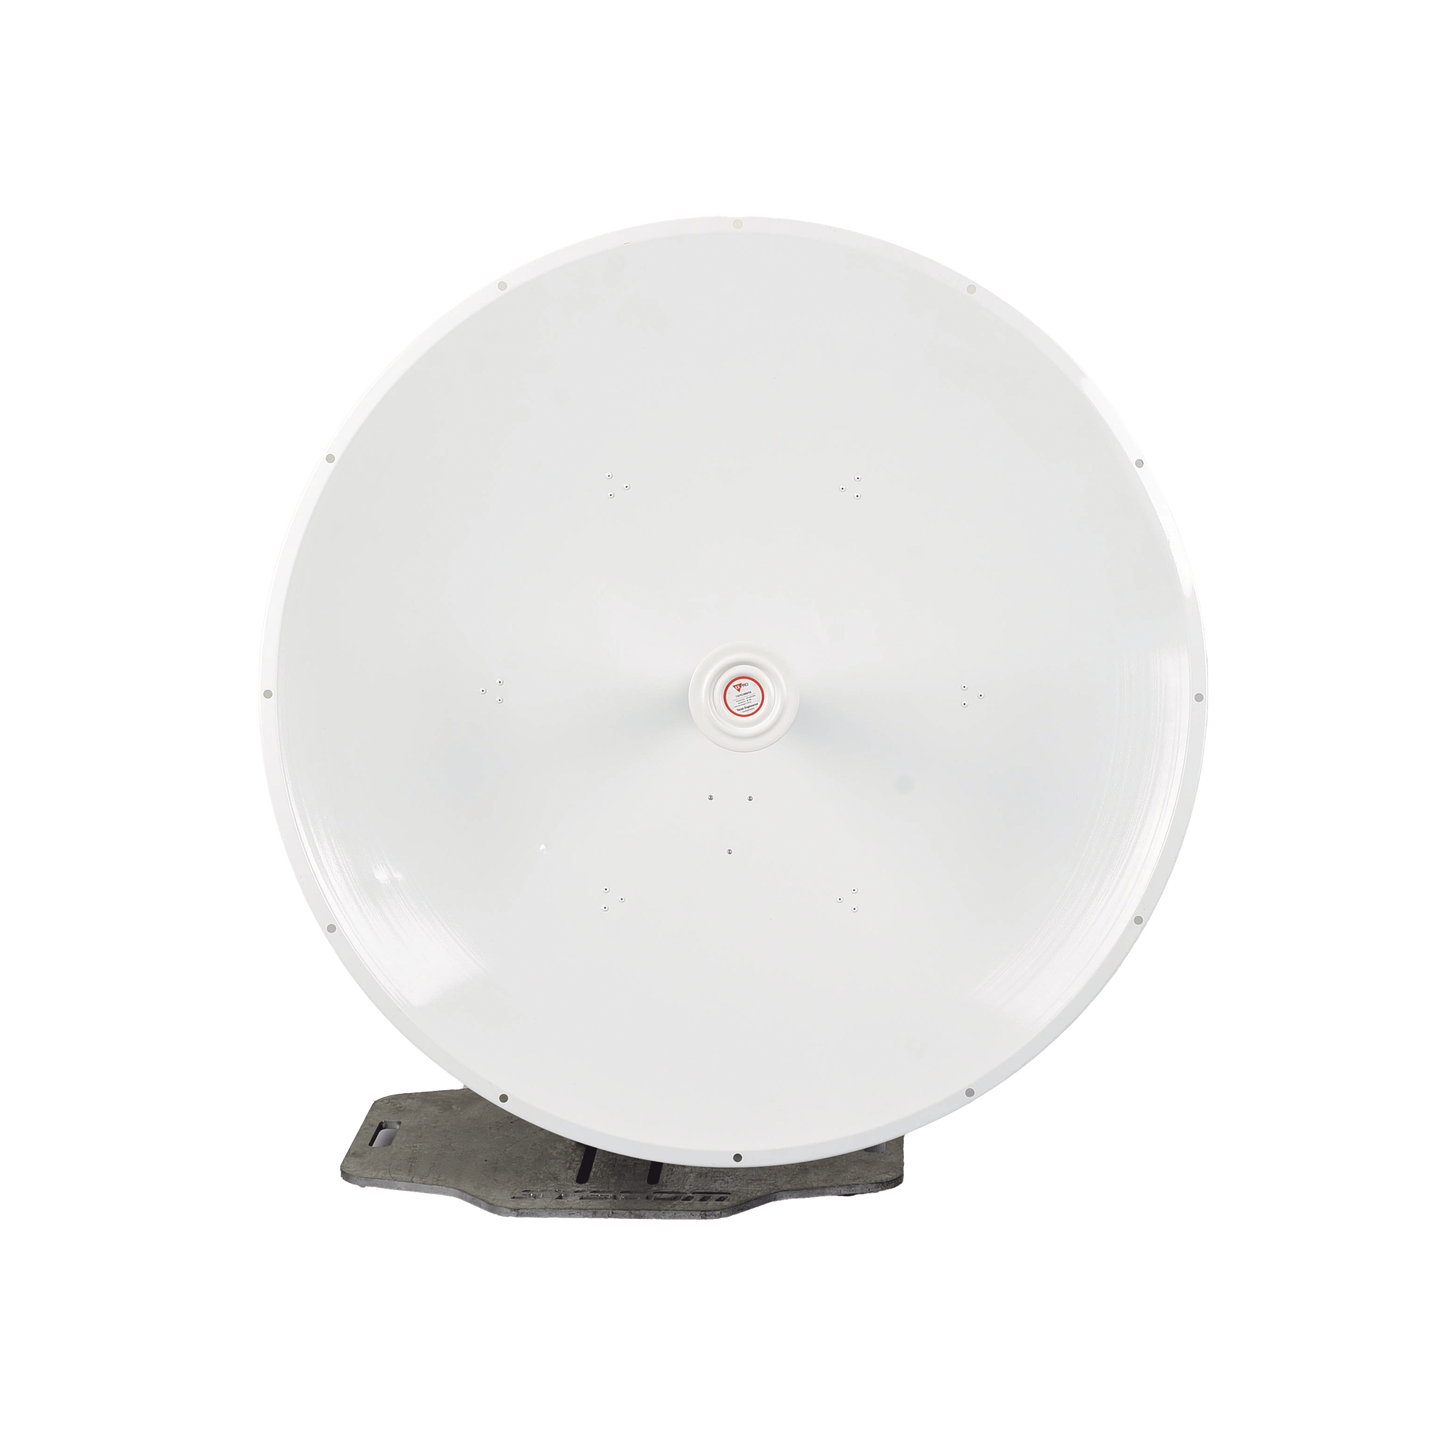 Antena direccional diseñada para radios C5x, B5x, Guía de onda para estabilizar la señal y minimiza la pérdida en transmisión, 4.9 - 6.5 GHz,  4ft, Ganancia de 36 dBi, Montaje incluido